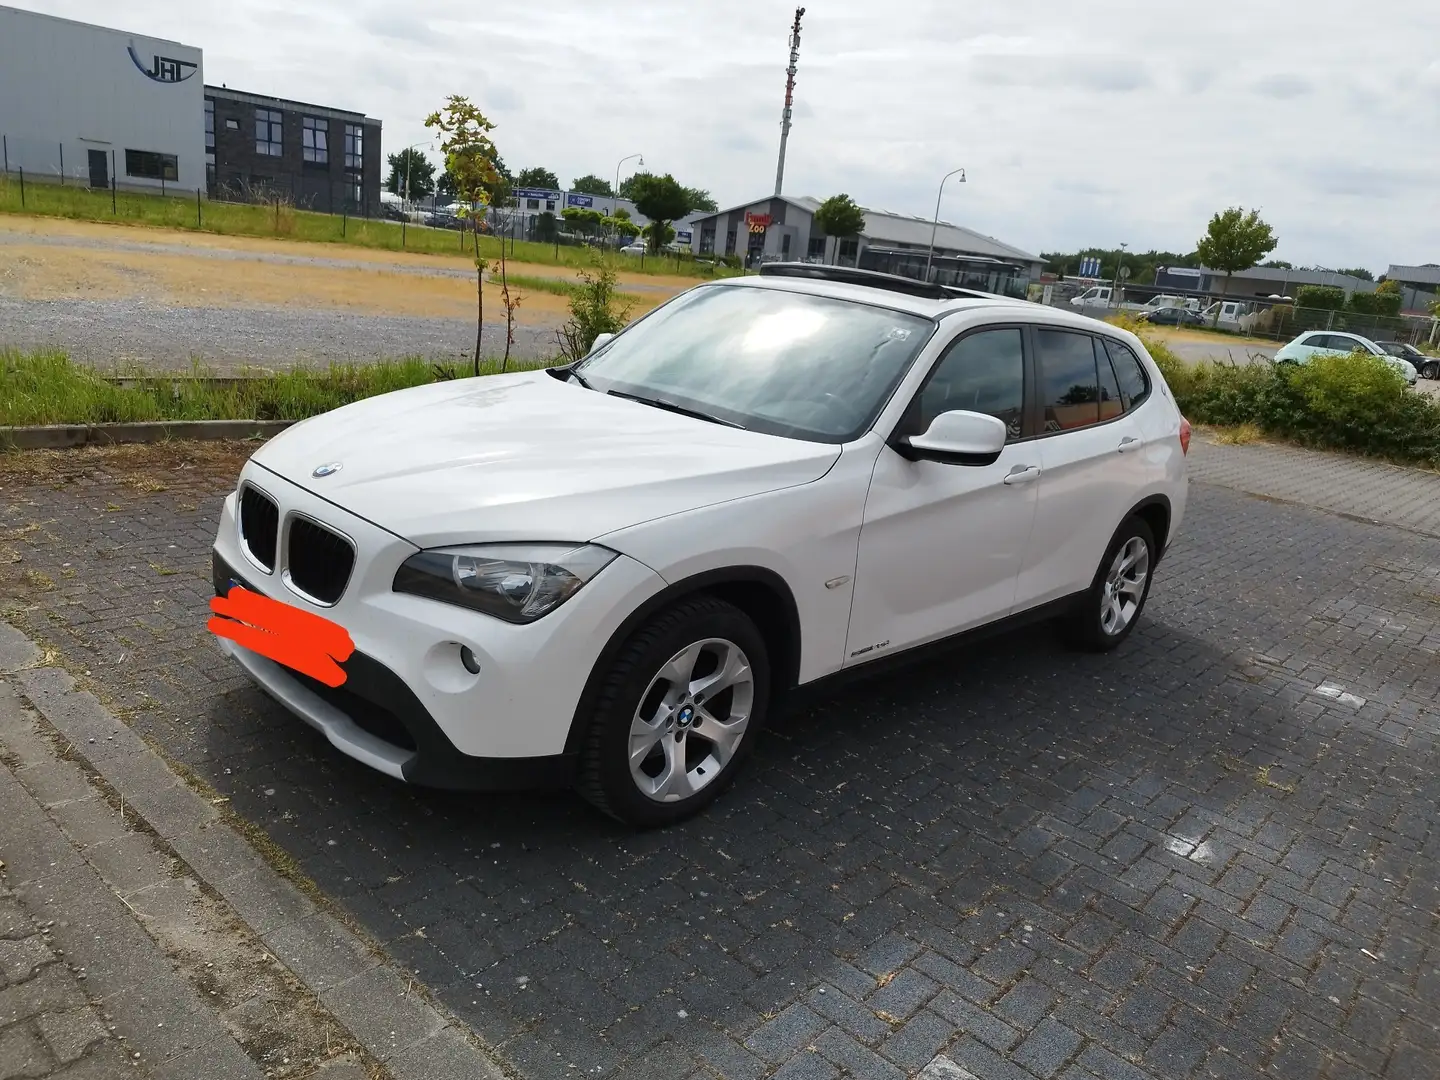 BMW X1 SUV/Geländewagen/Pickup in Weiß gebraucht in Teltow / nahe